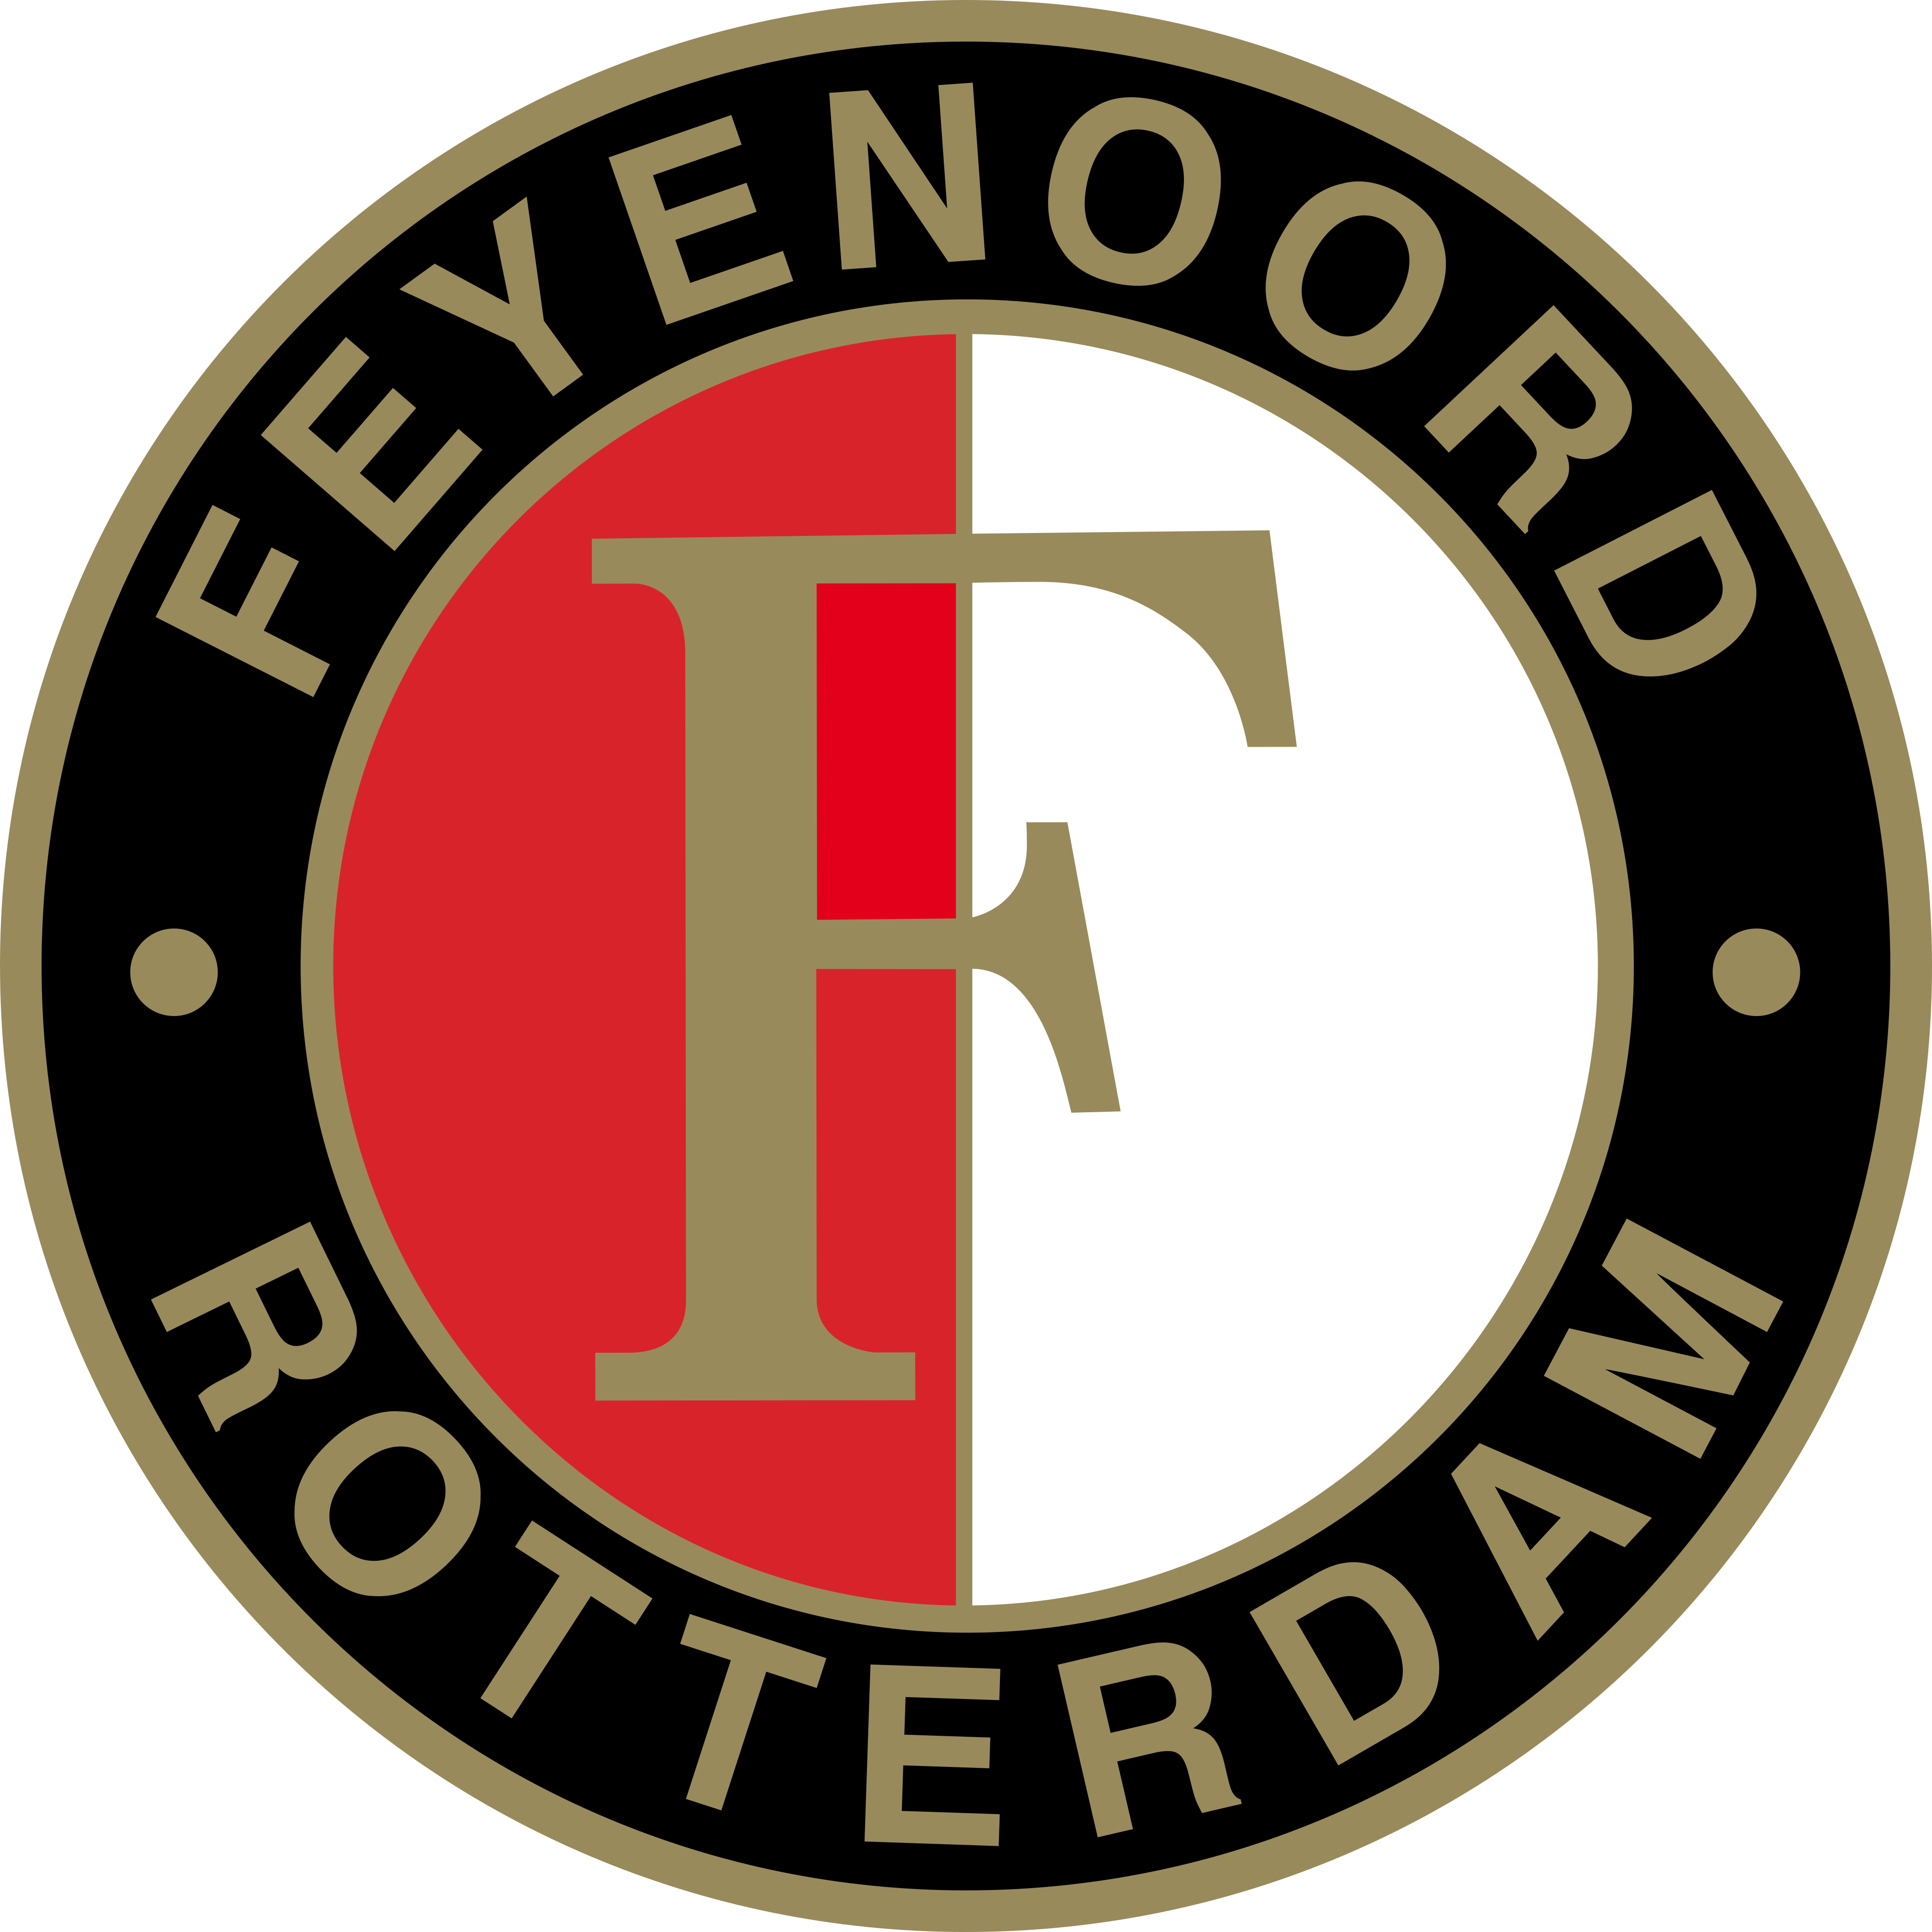 feyenoord logo - Feyenoord Rotterdam Logo